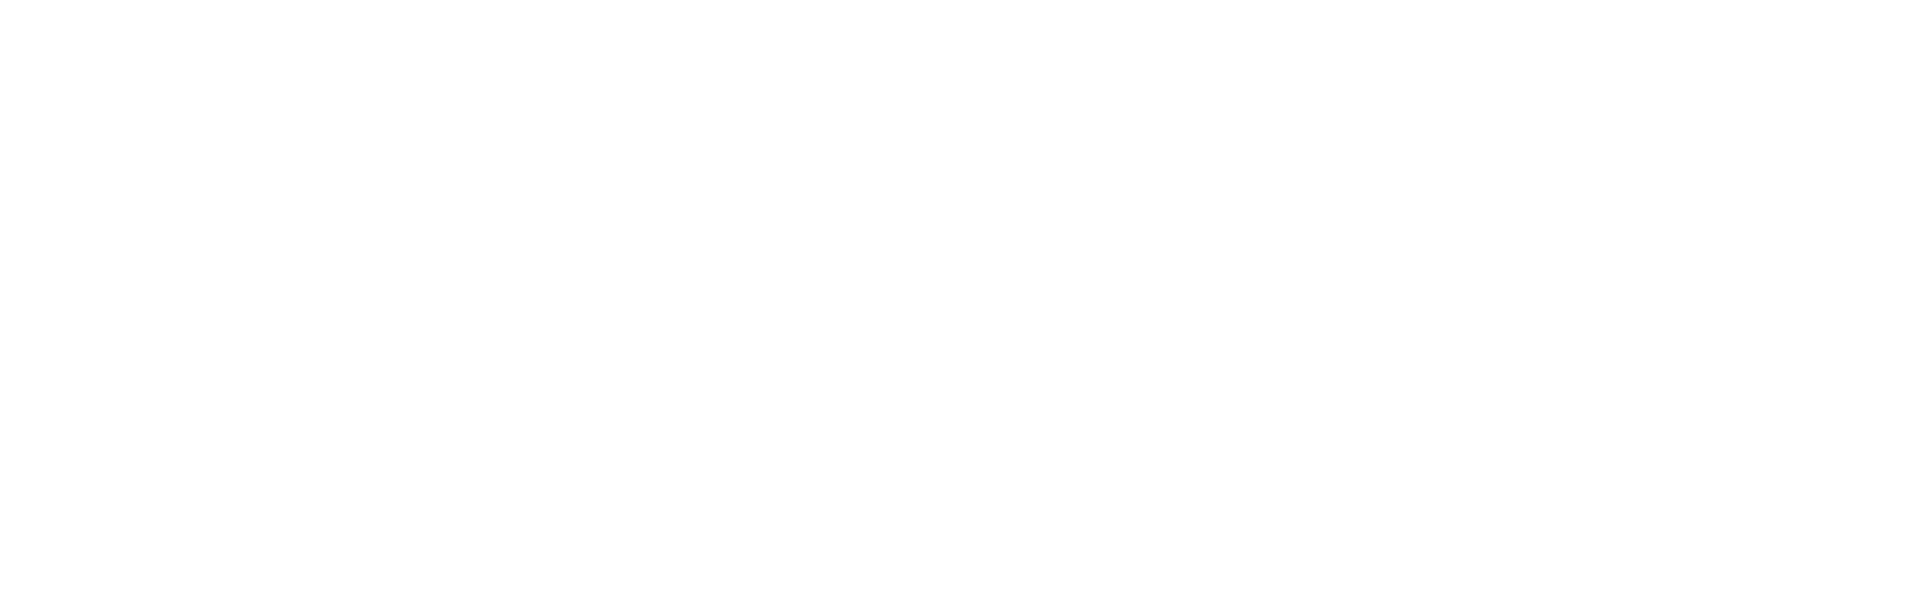 deutsche post logo white 1